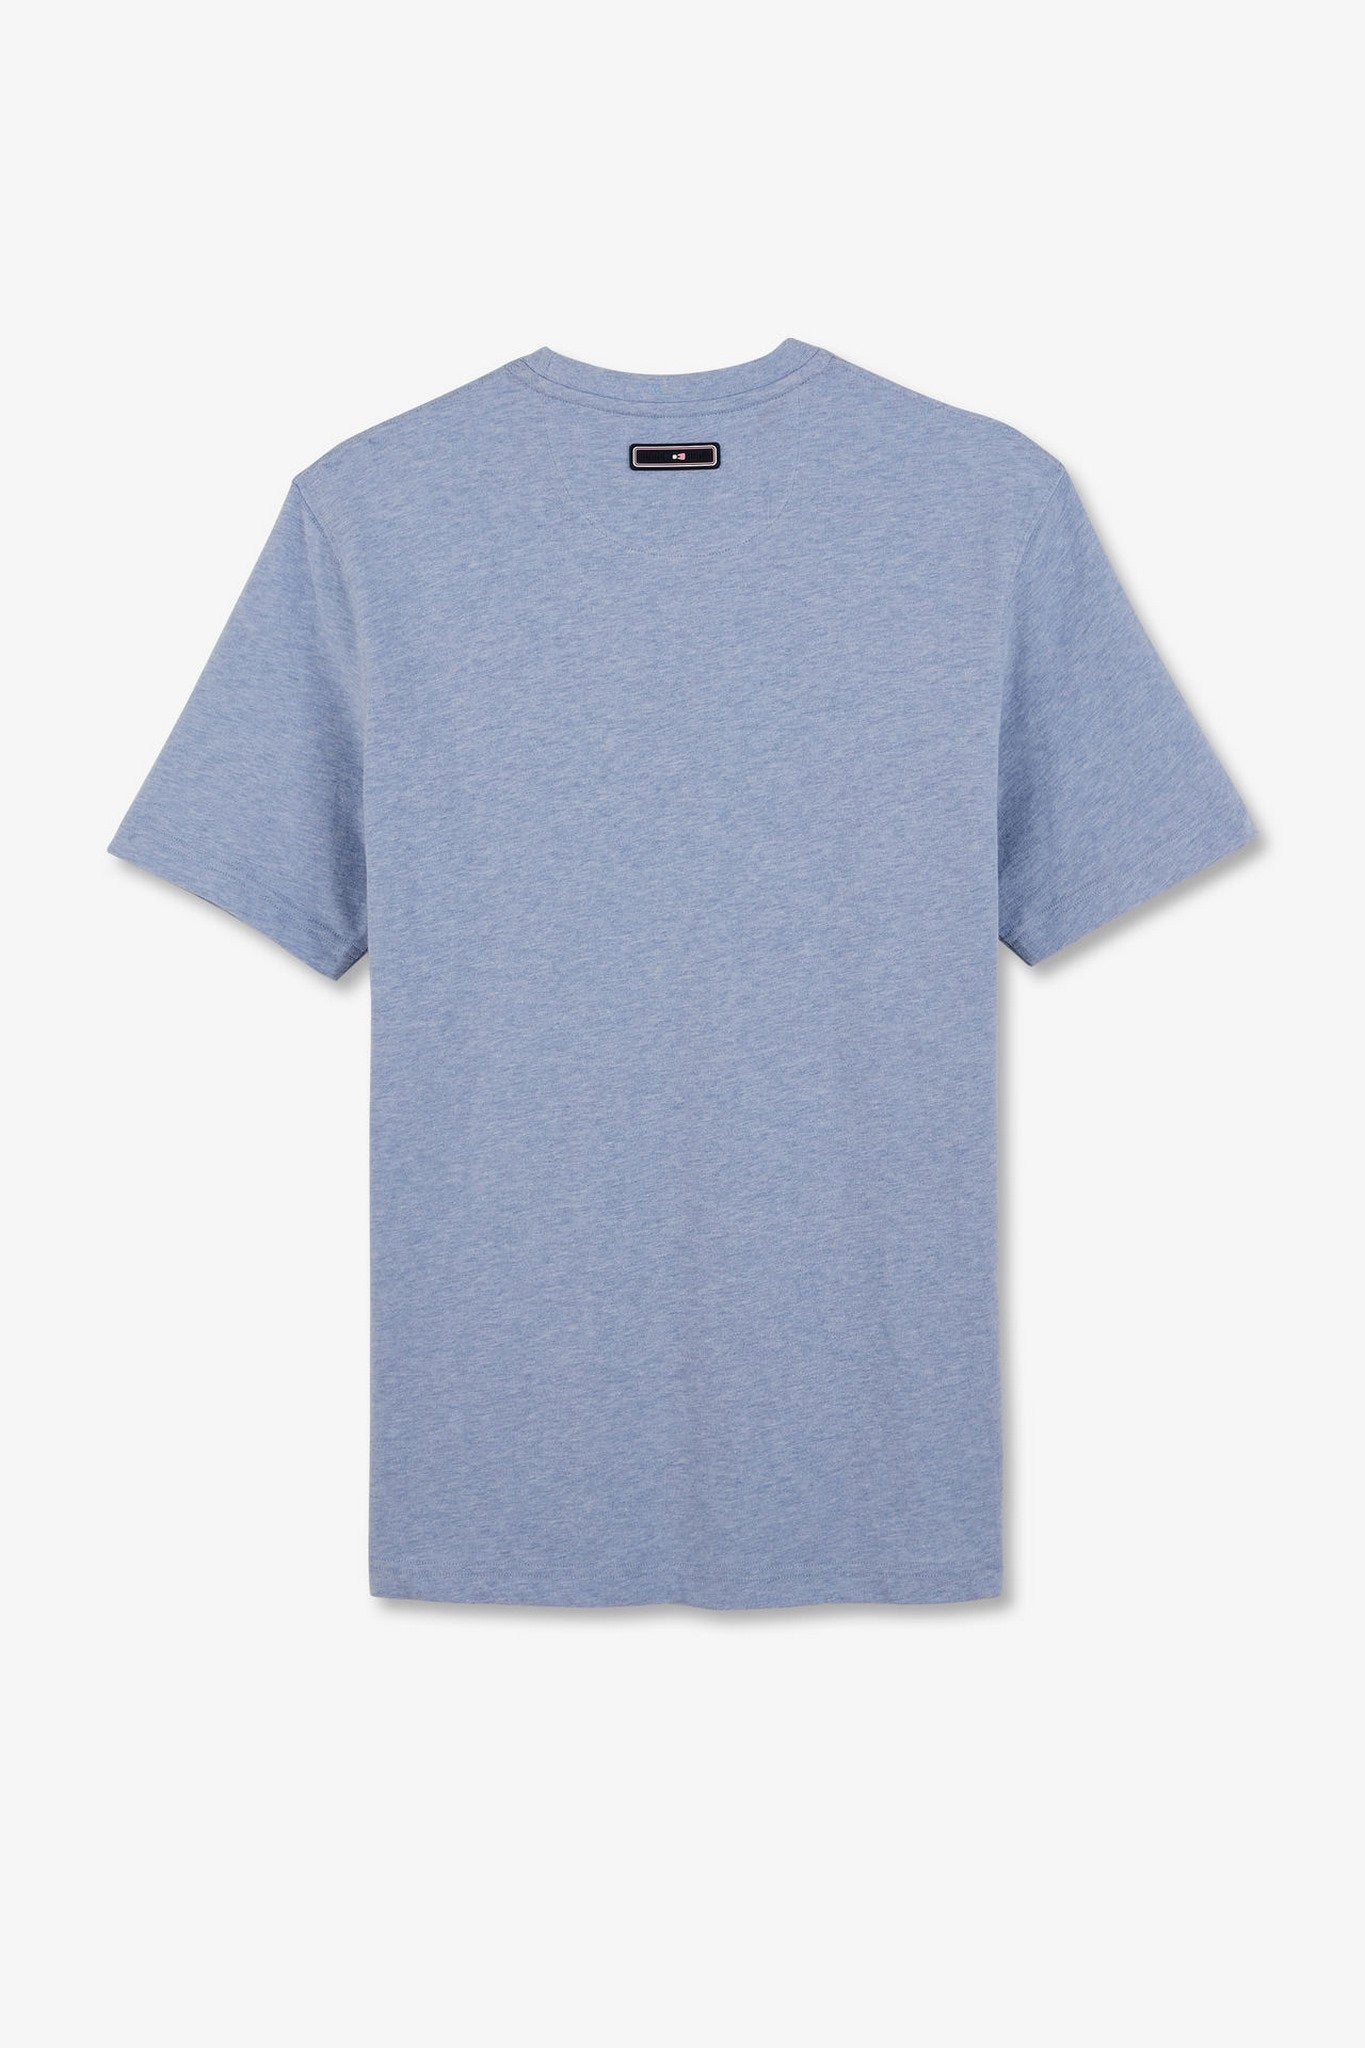 Light Blue T-Shirt With Double Eden Park Lettering_E24MAITC0039_BLC21_05